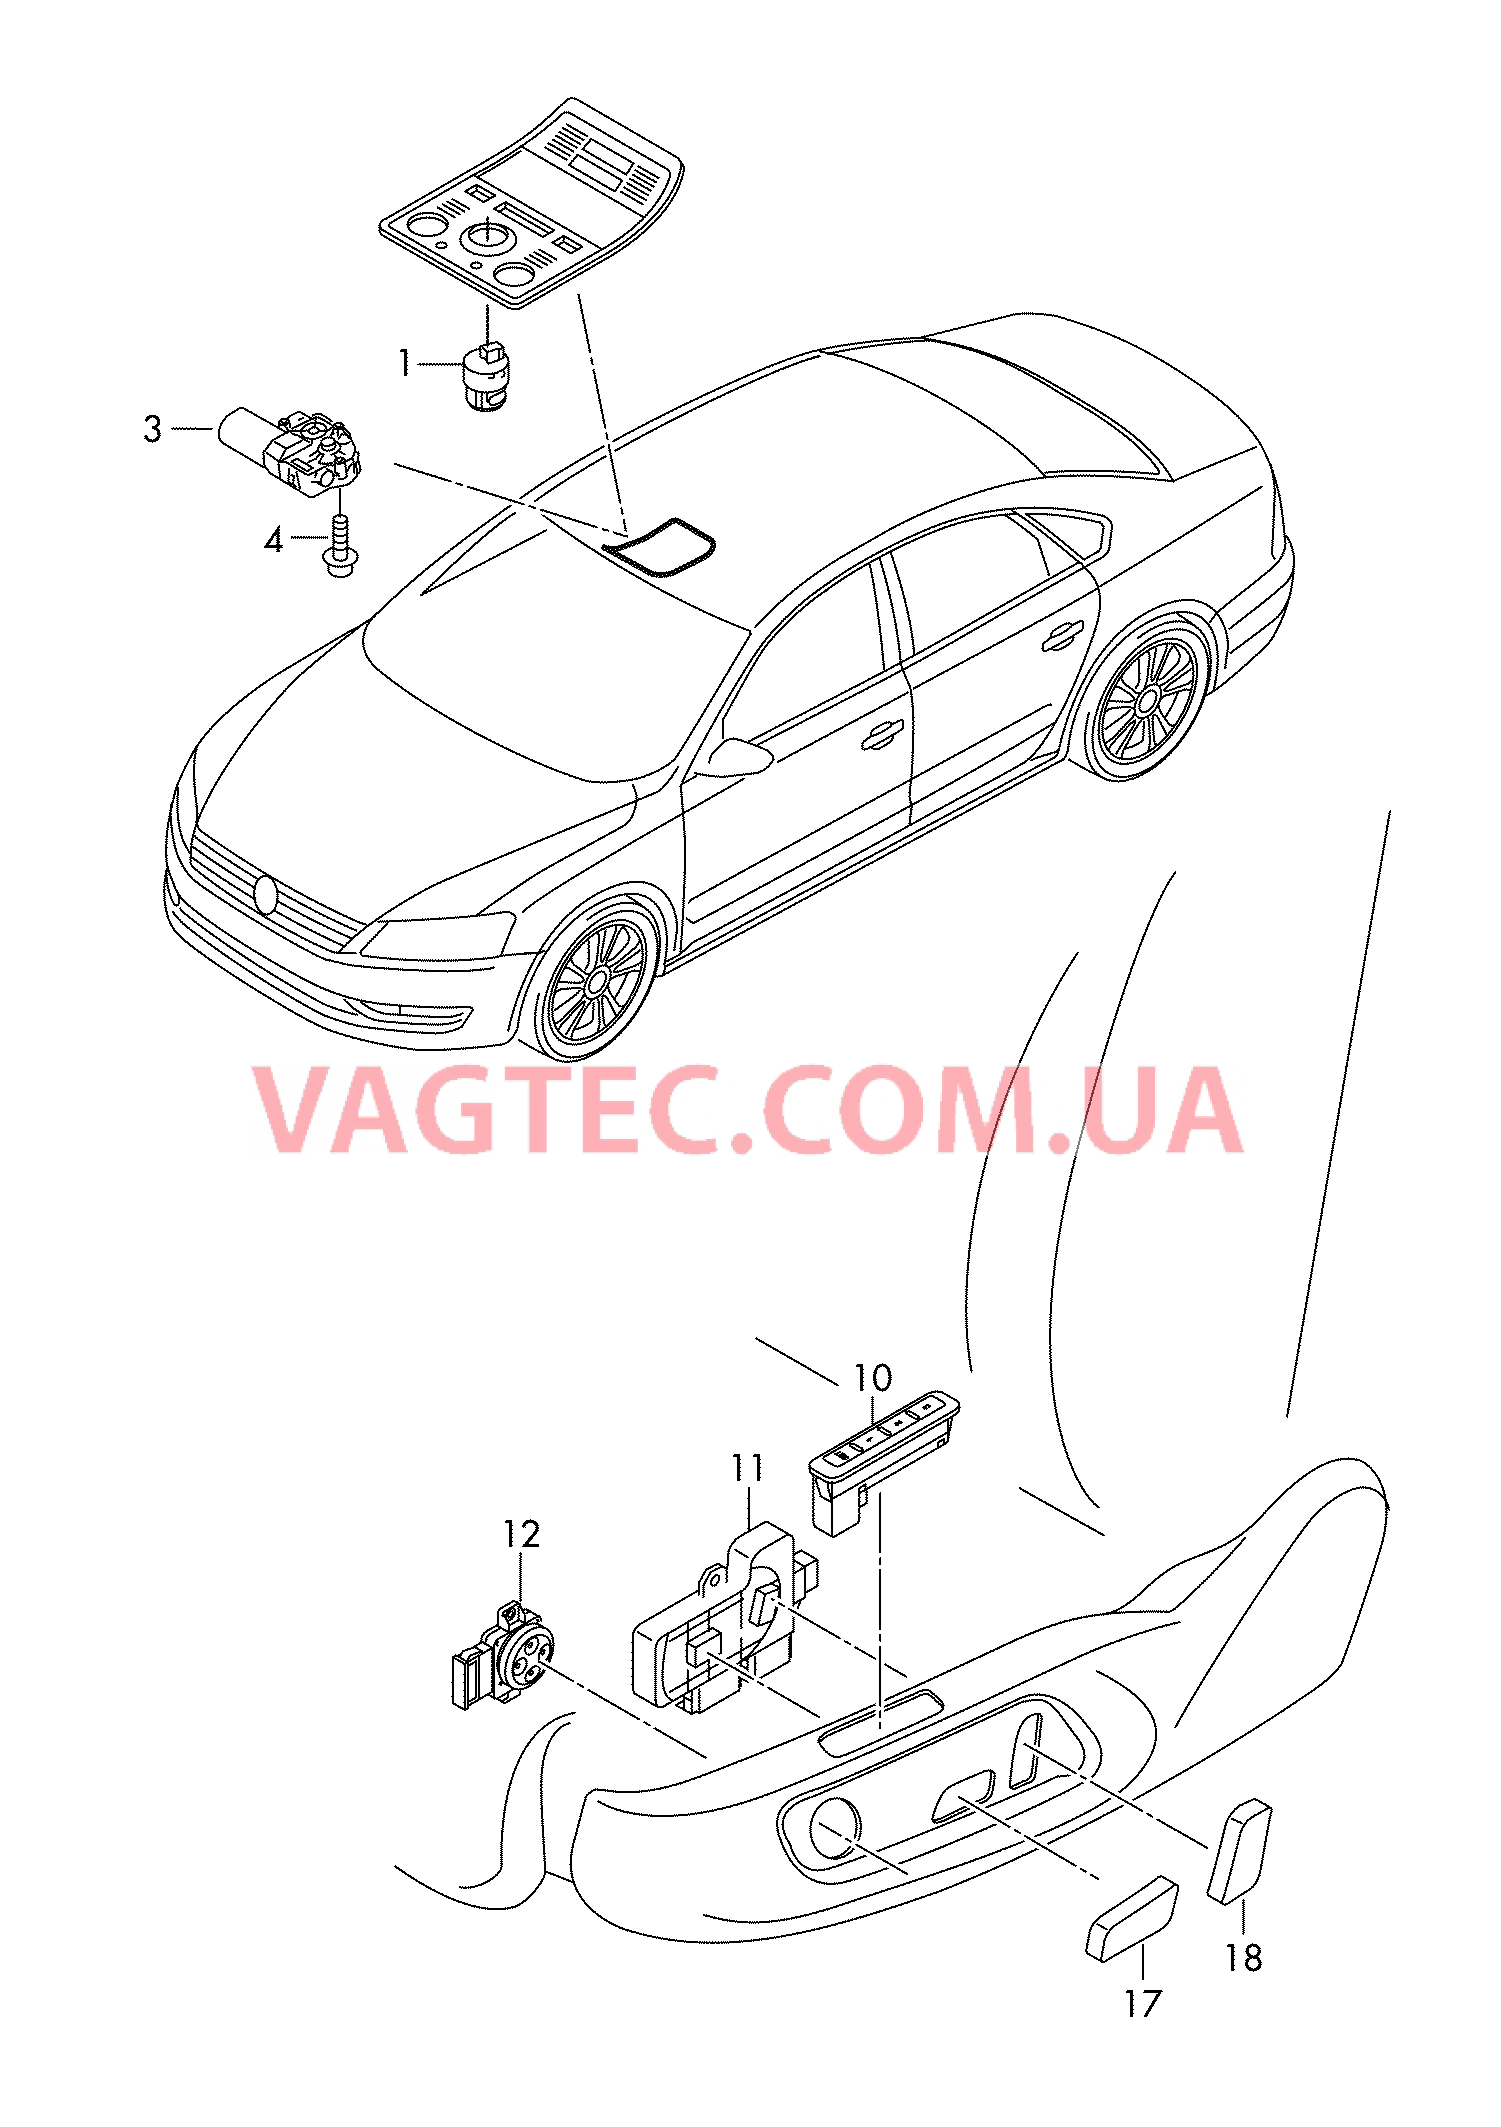 Выключатель на крыше Мотор привода люка Выкл-тель регулир-ки положения сиденья и спинки  для VOLKSWAGEN Passat 2015